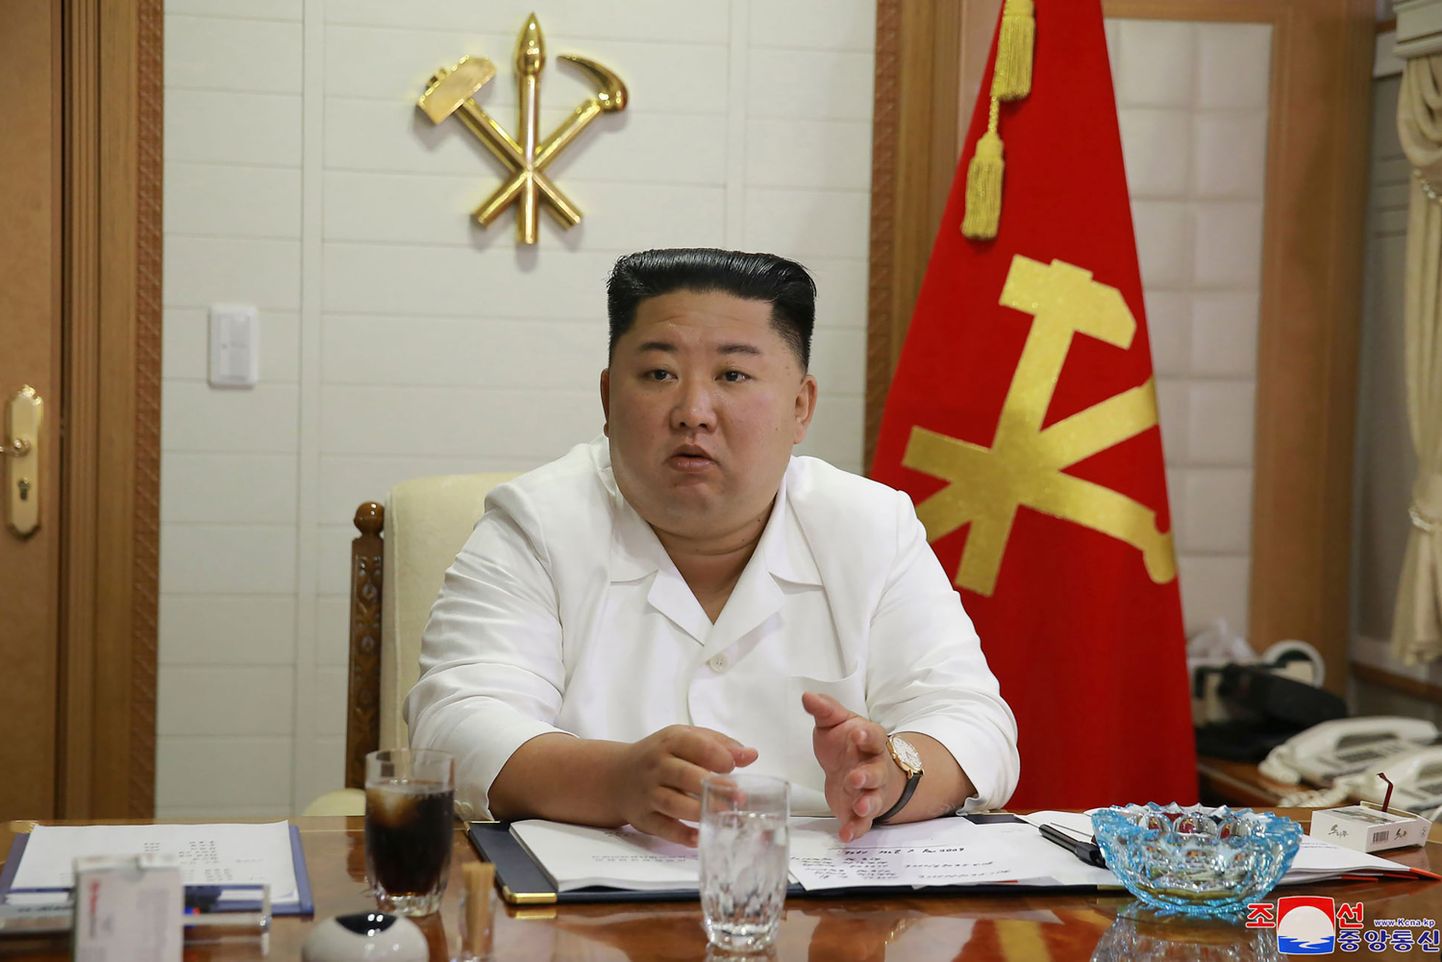 Põhja-Korea liider Kim Jong-un palus Lõuna-Korealt vabandust nende kodaniku tapmise eest.